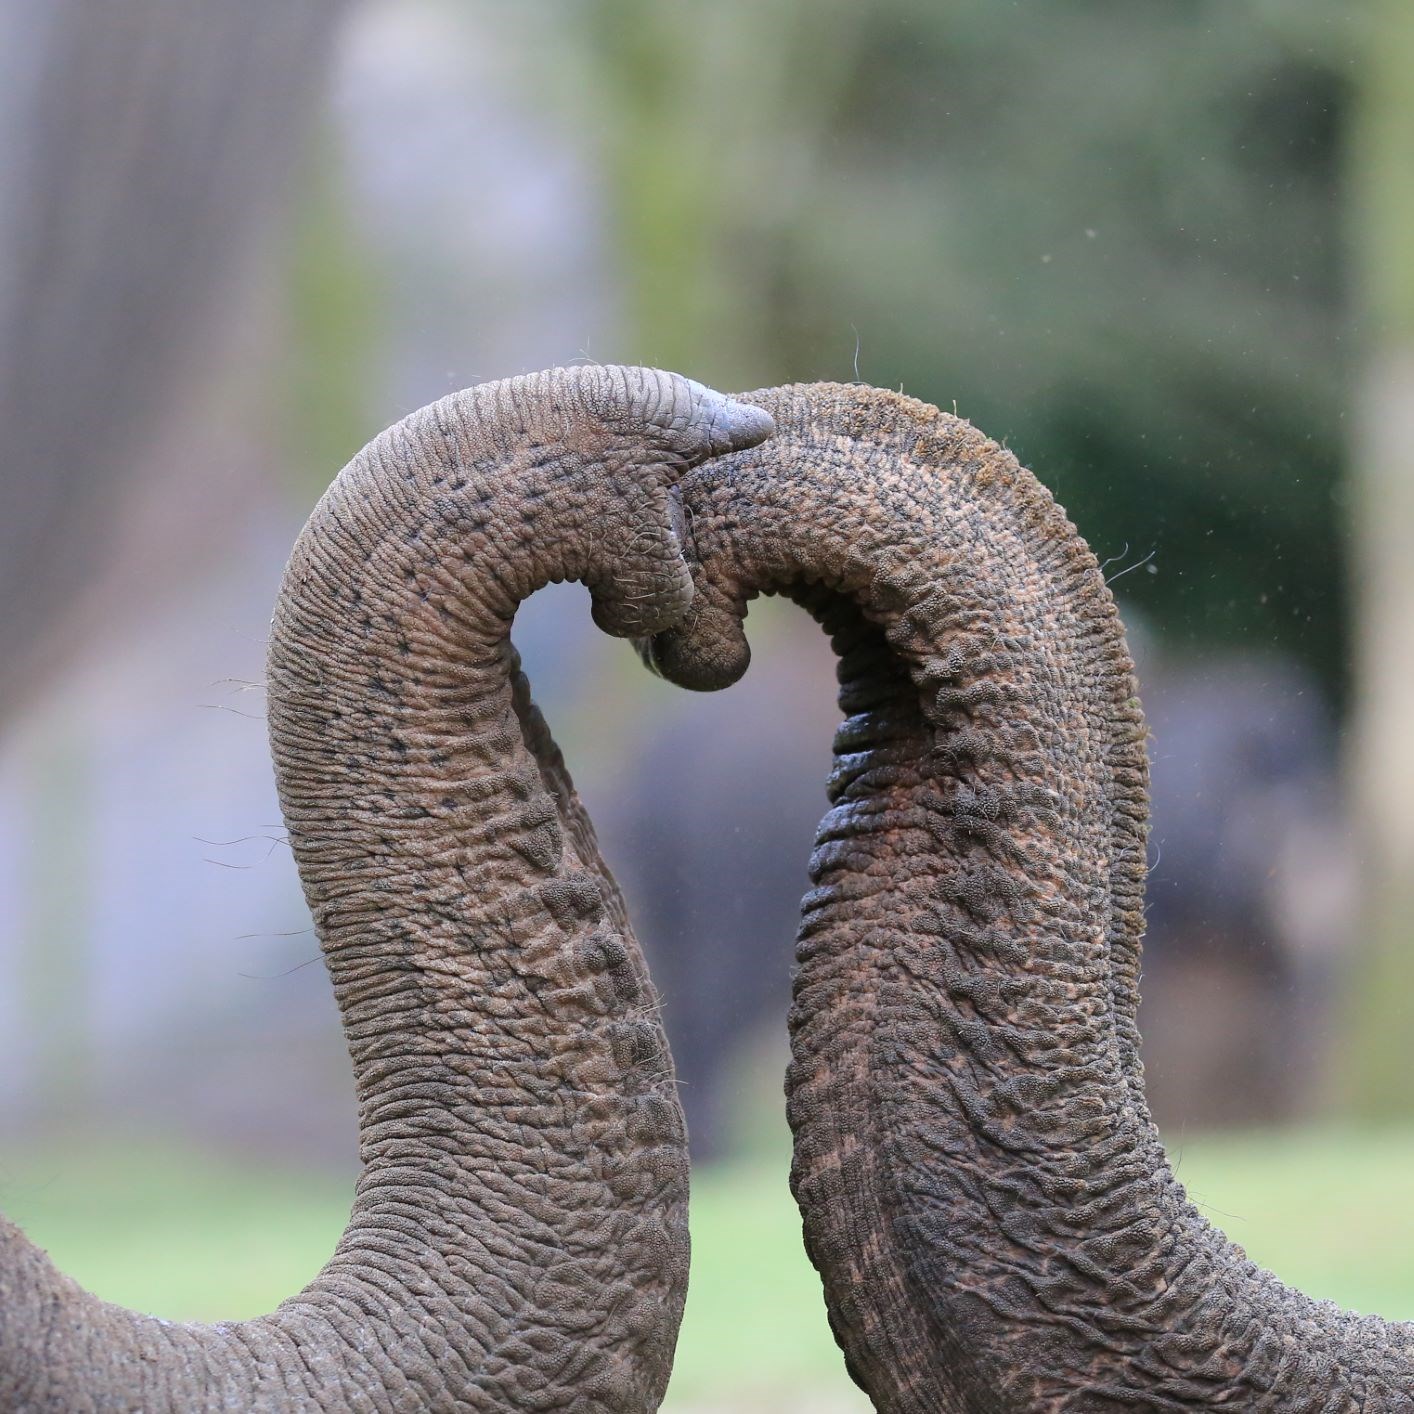 Two elephant trunks press together to make a heart shape 